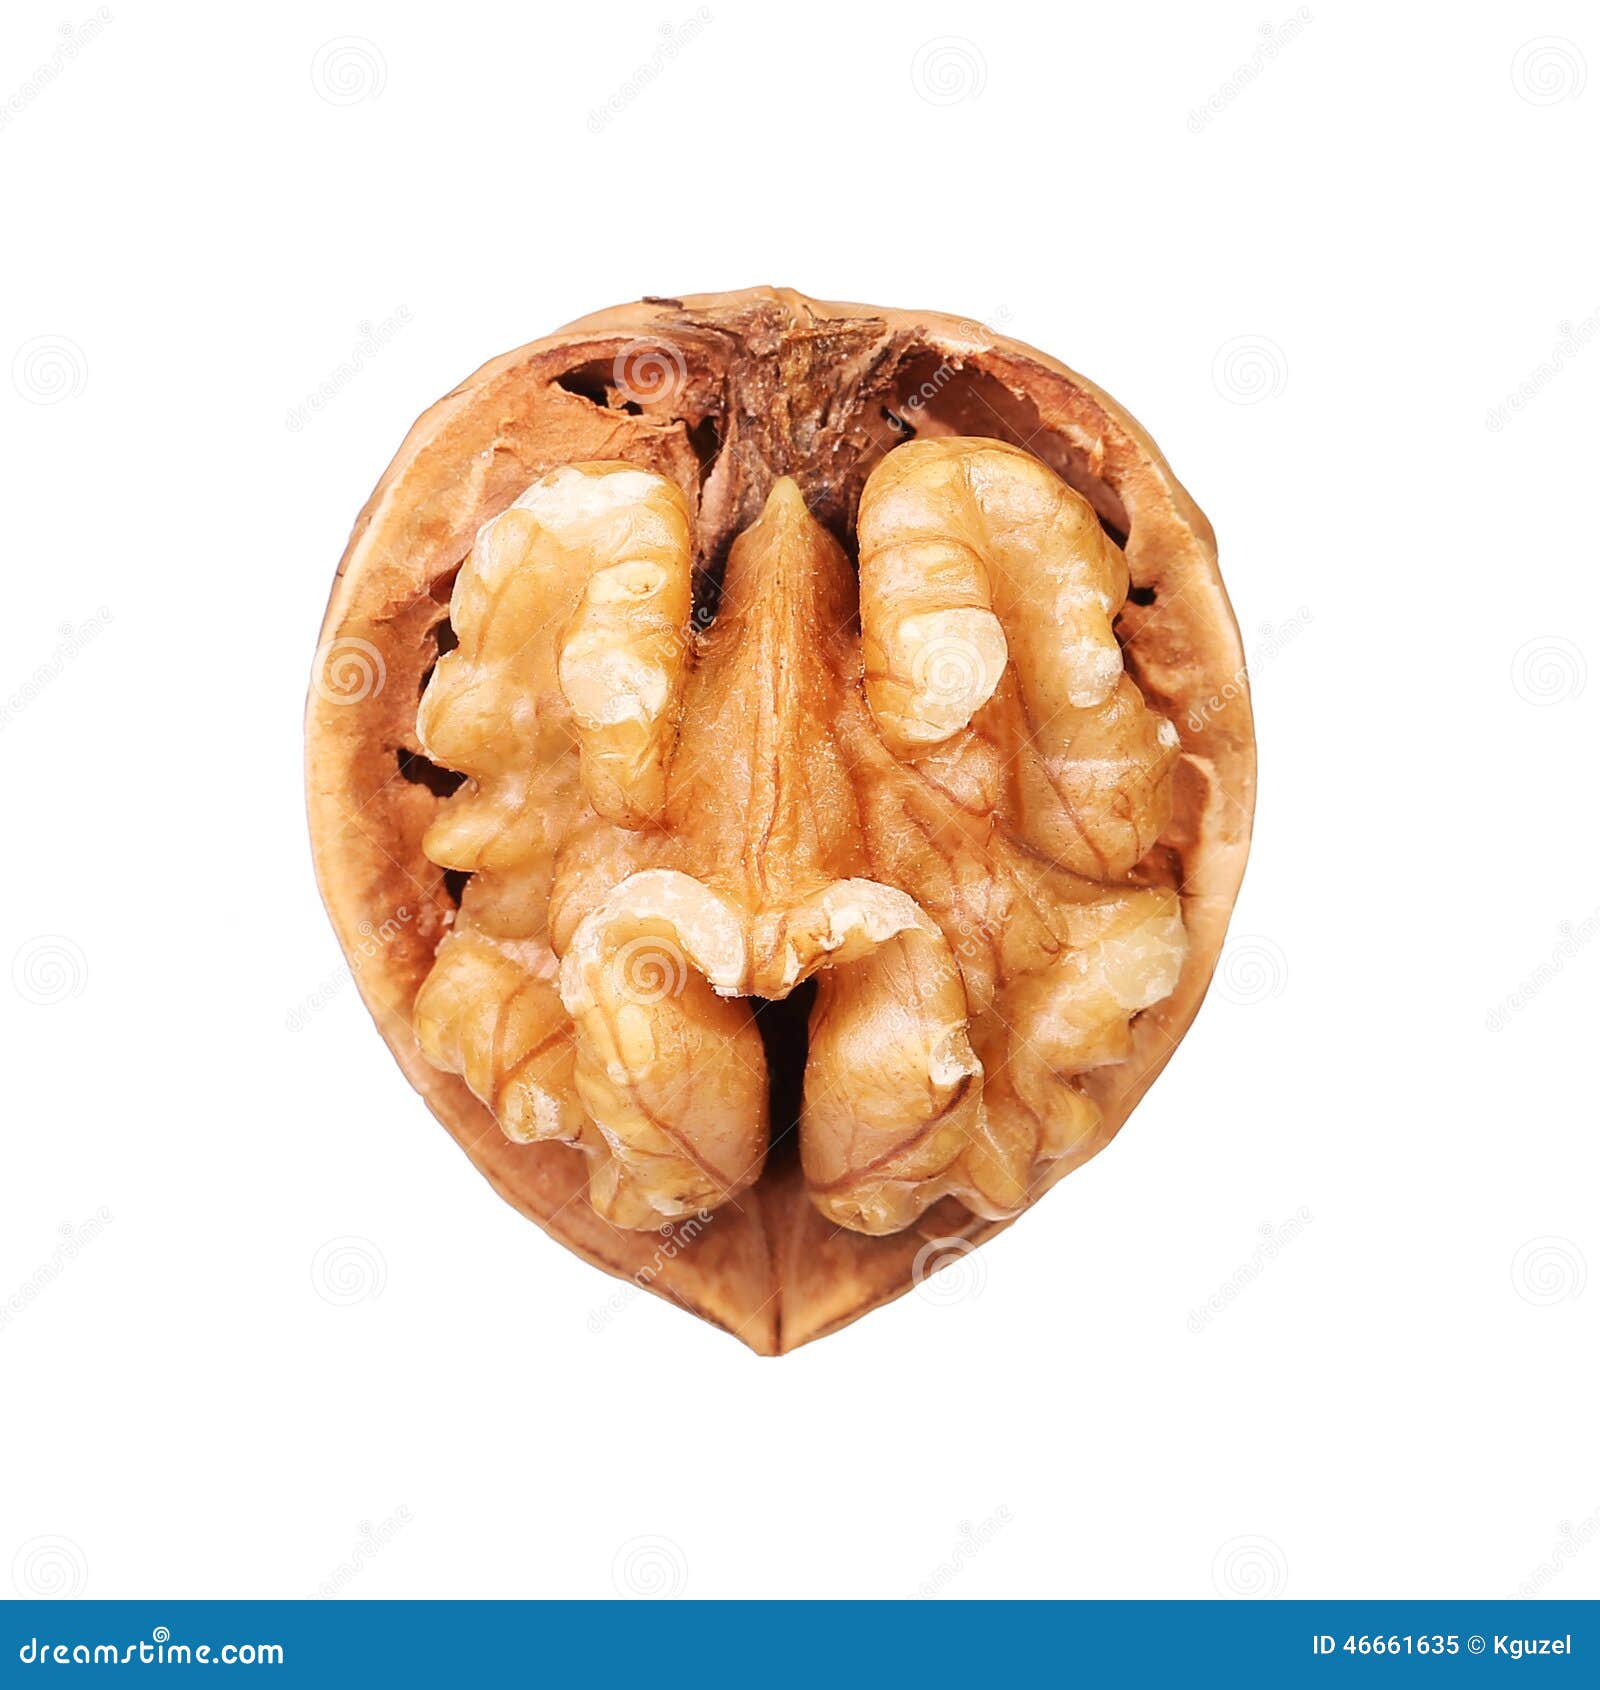 opened walnut half in shell 